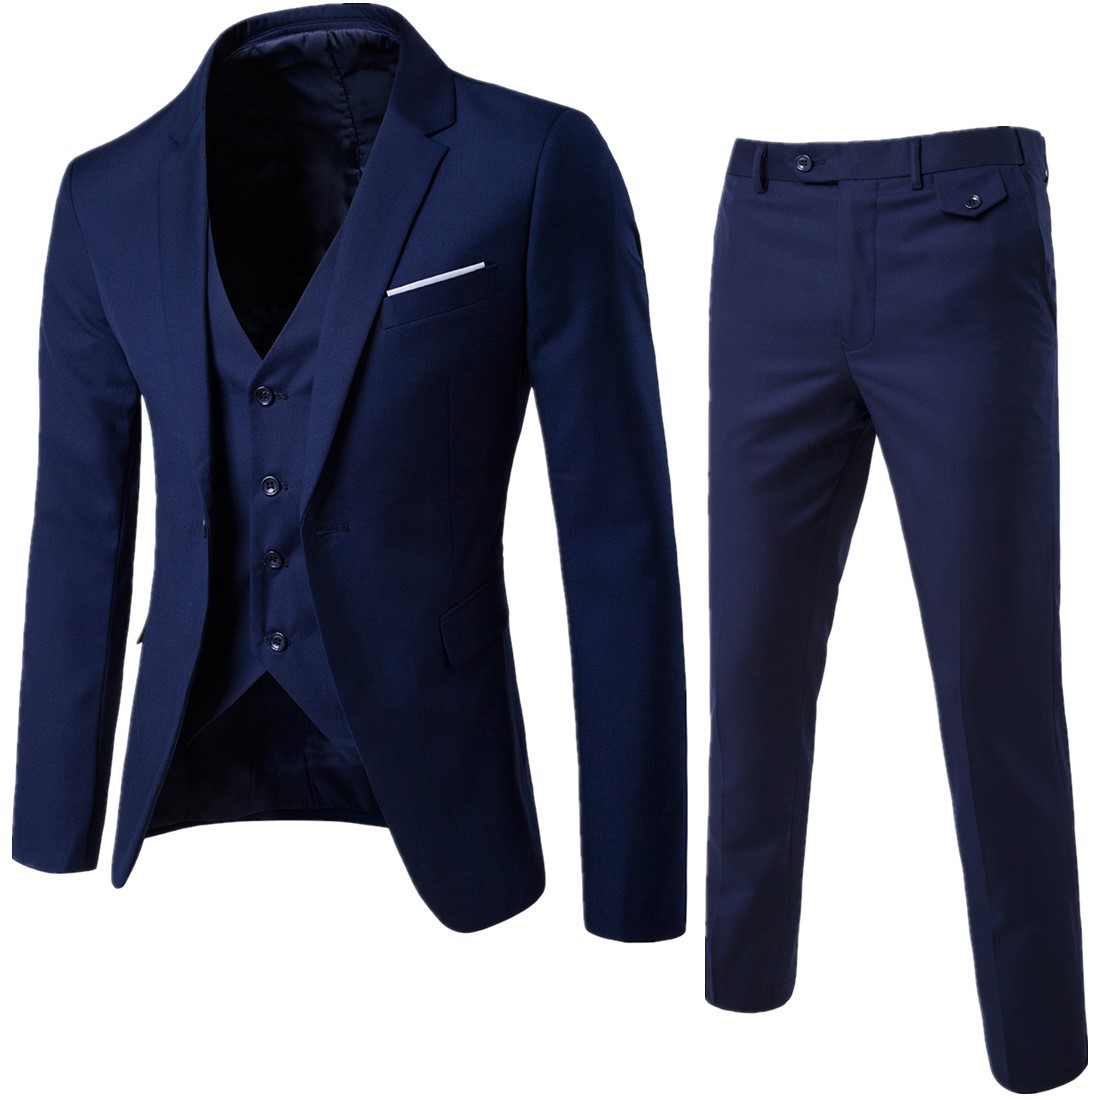 Spring and autumn foreign trade men's suit coat Korean version solid color slim suit suit trousers men's two piece set wholesale